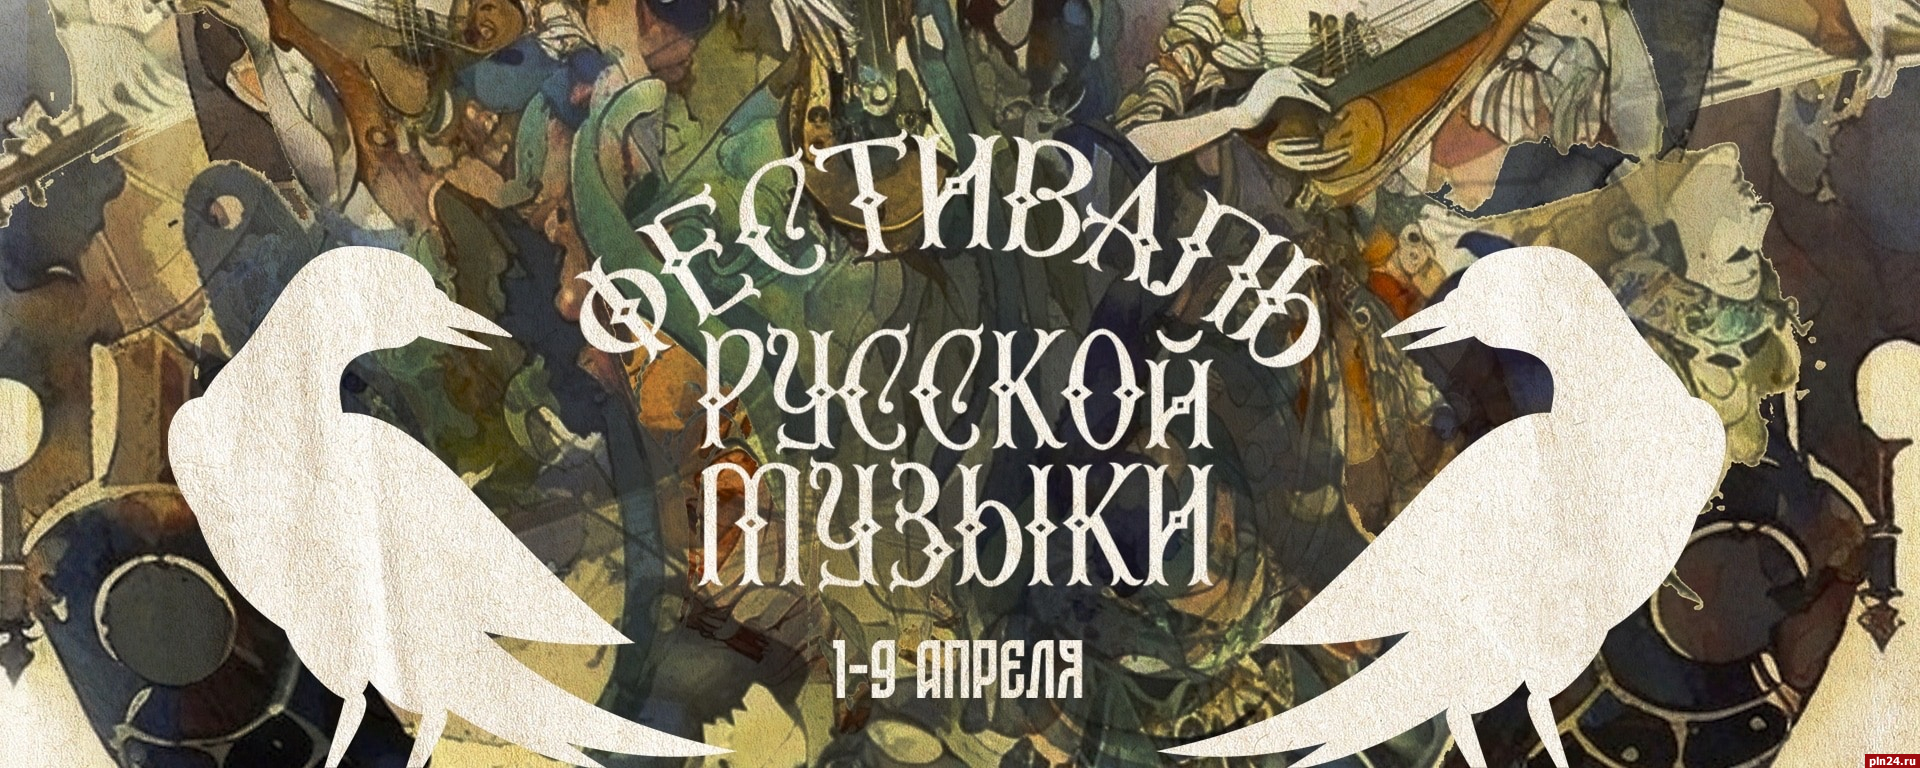 Фестиваль русской музыки откроется в Пскове 1 апреля